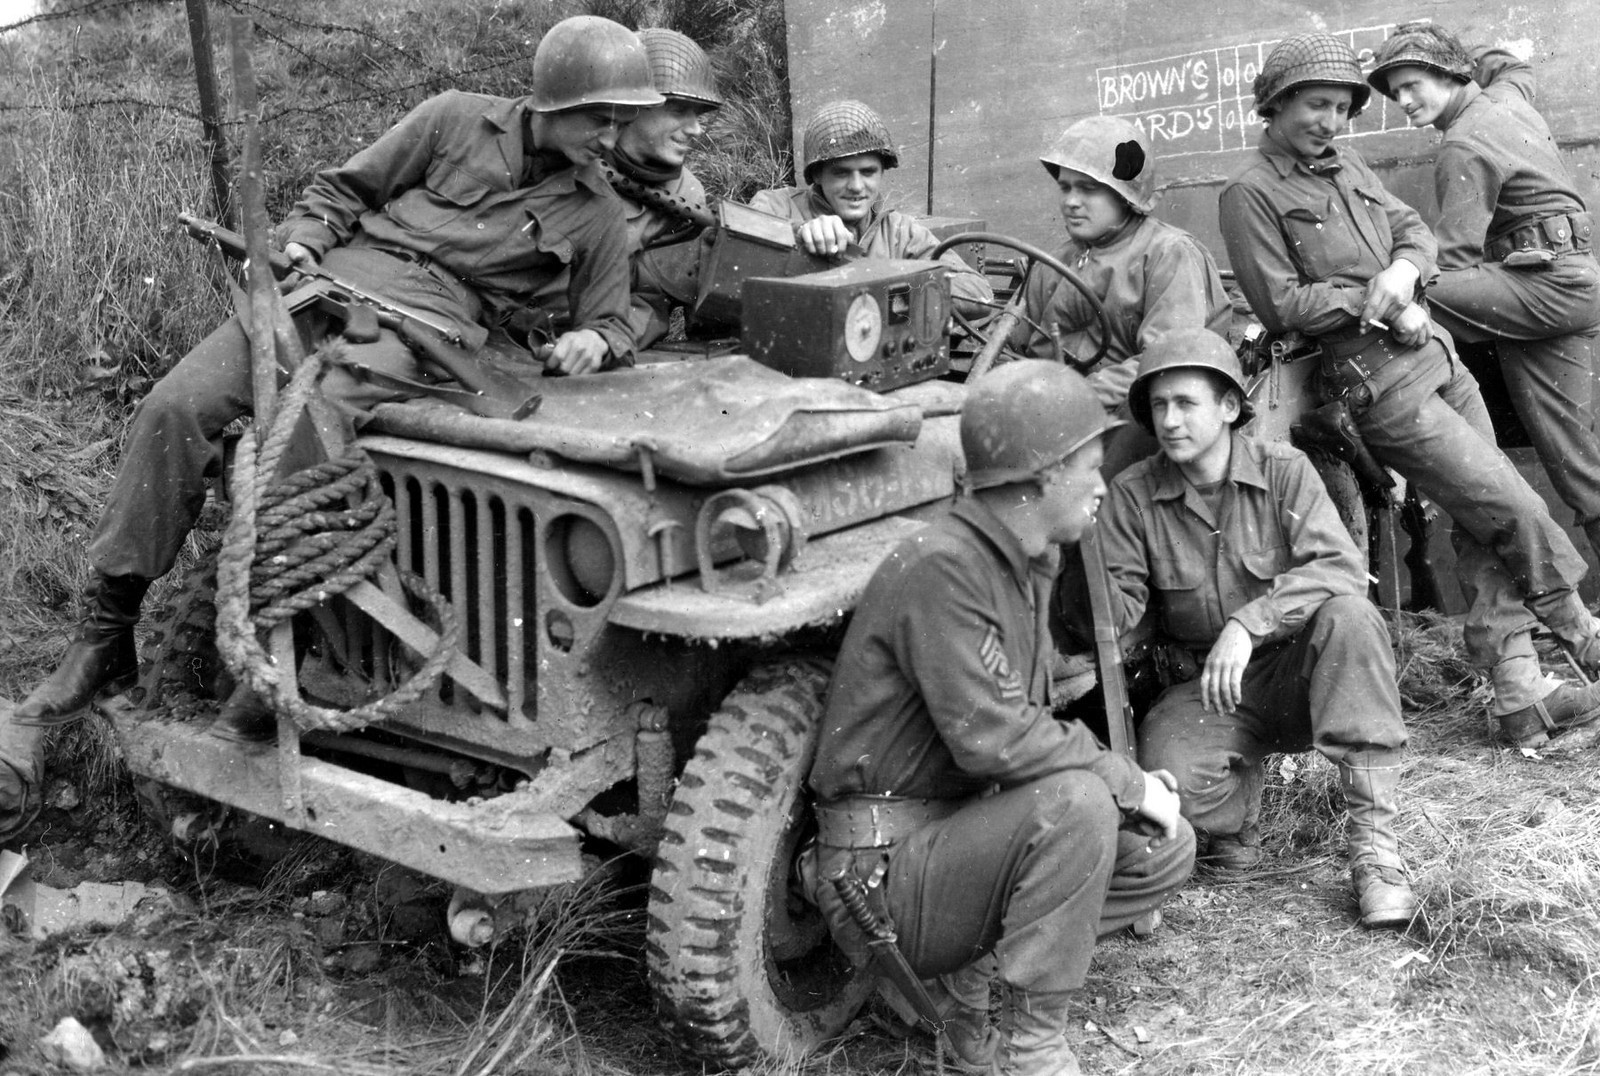 1944/45 Photos of Jeeps in WW2 | eWillys